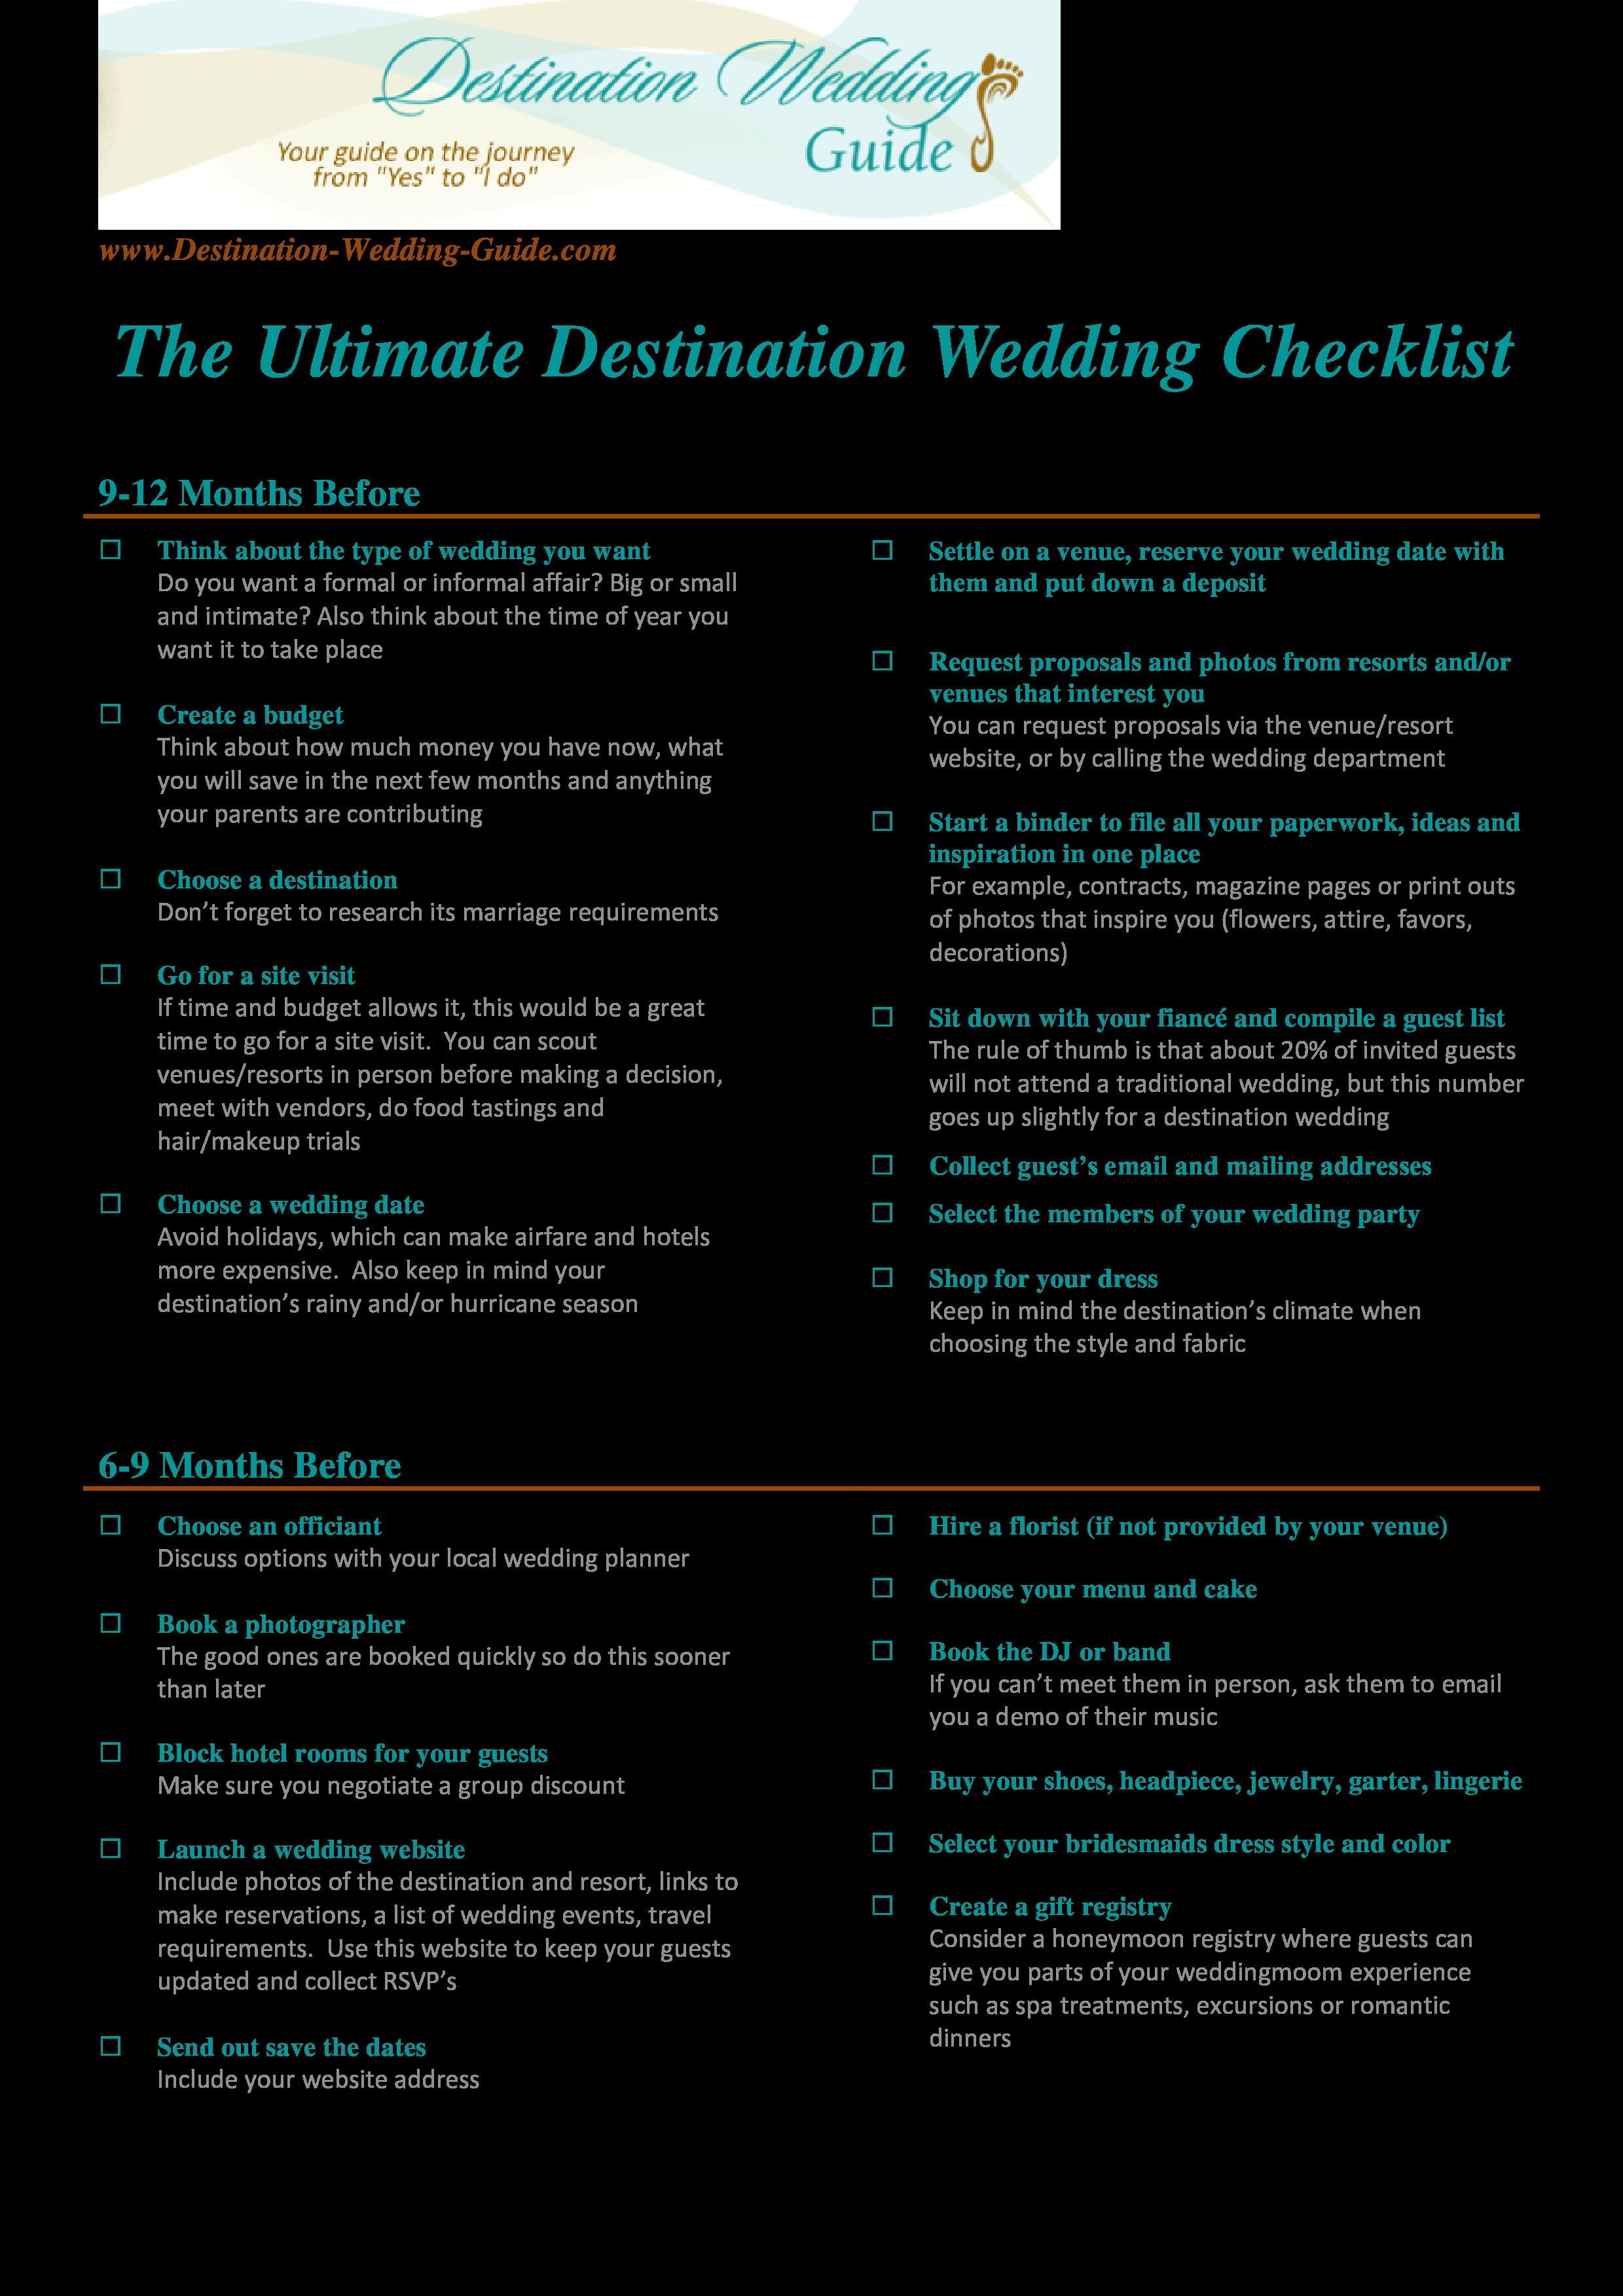 Kostenloses Ultimate Destination Wedding Checklist Pertaining To Wedding Photo Checklist Template Regarding Wedding Photo Checklist Template